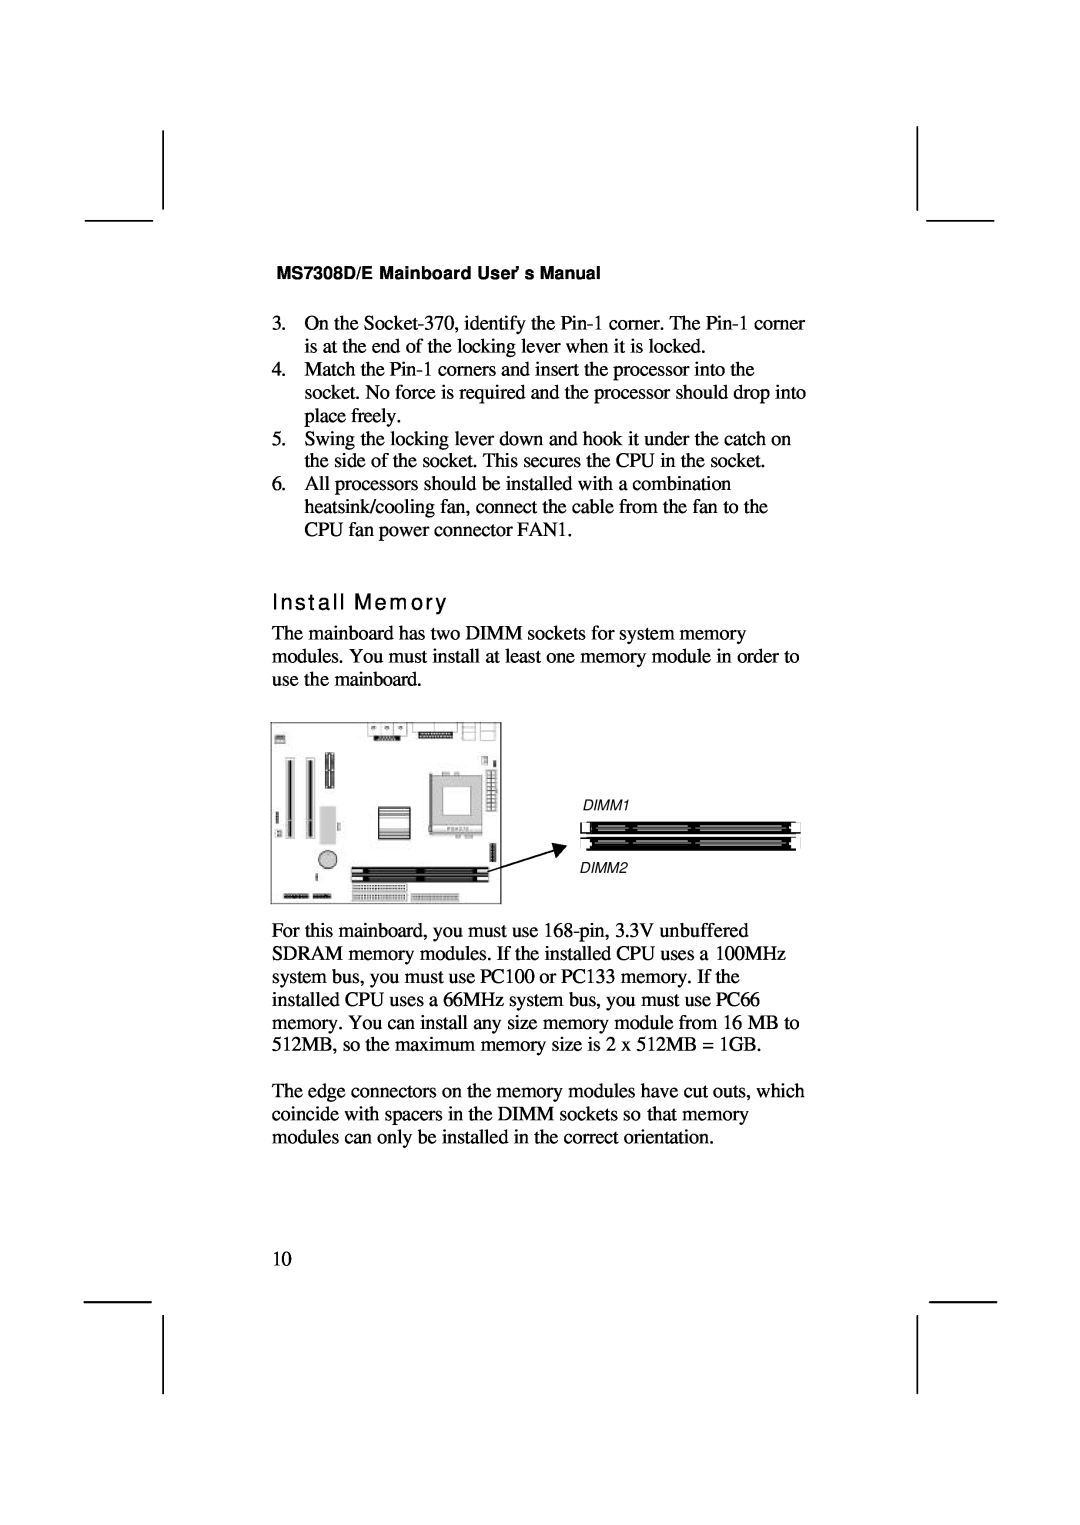 IBM V1.6 S63X/JUNE 2000, MS7308D/E user manual Install Memory, DIMM1 DIMM2 